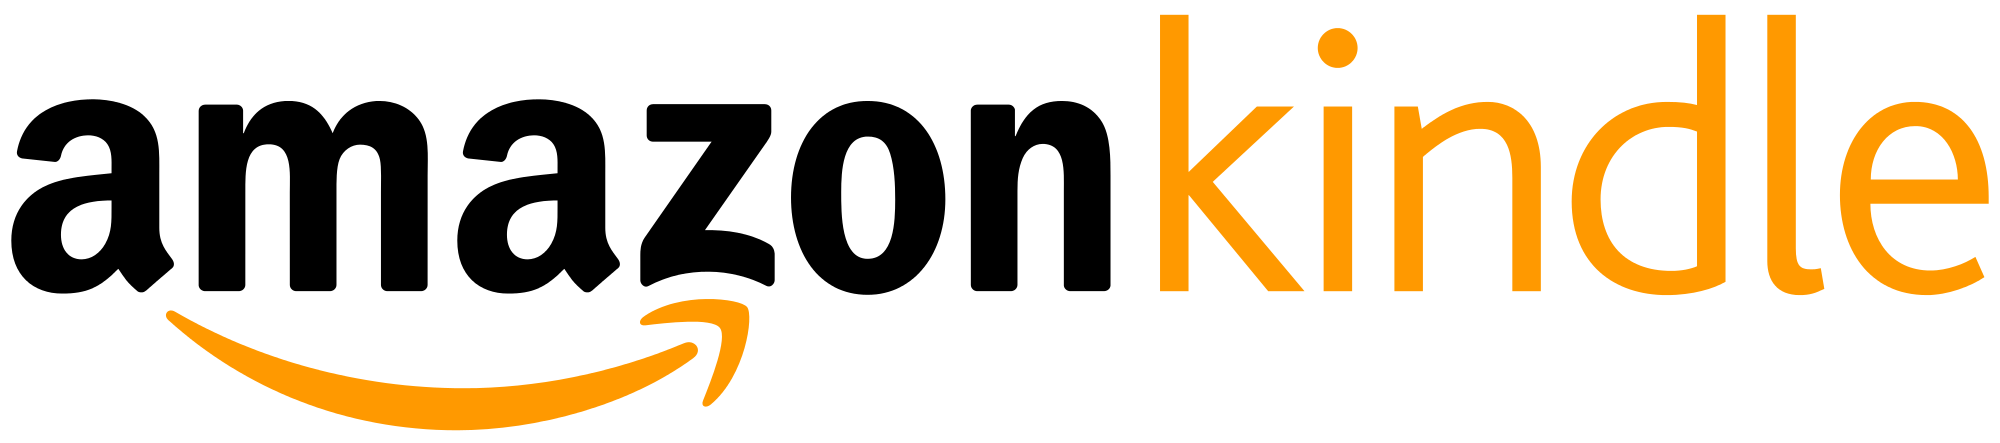 Amazon Kindle Logo Vector EPS